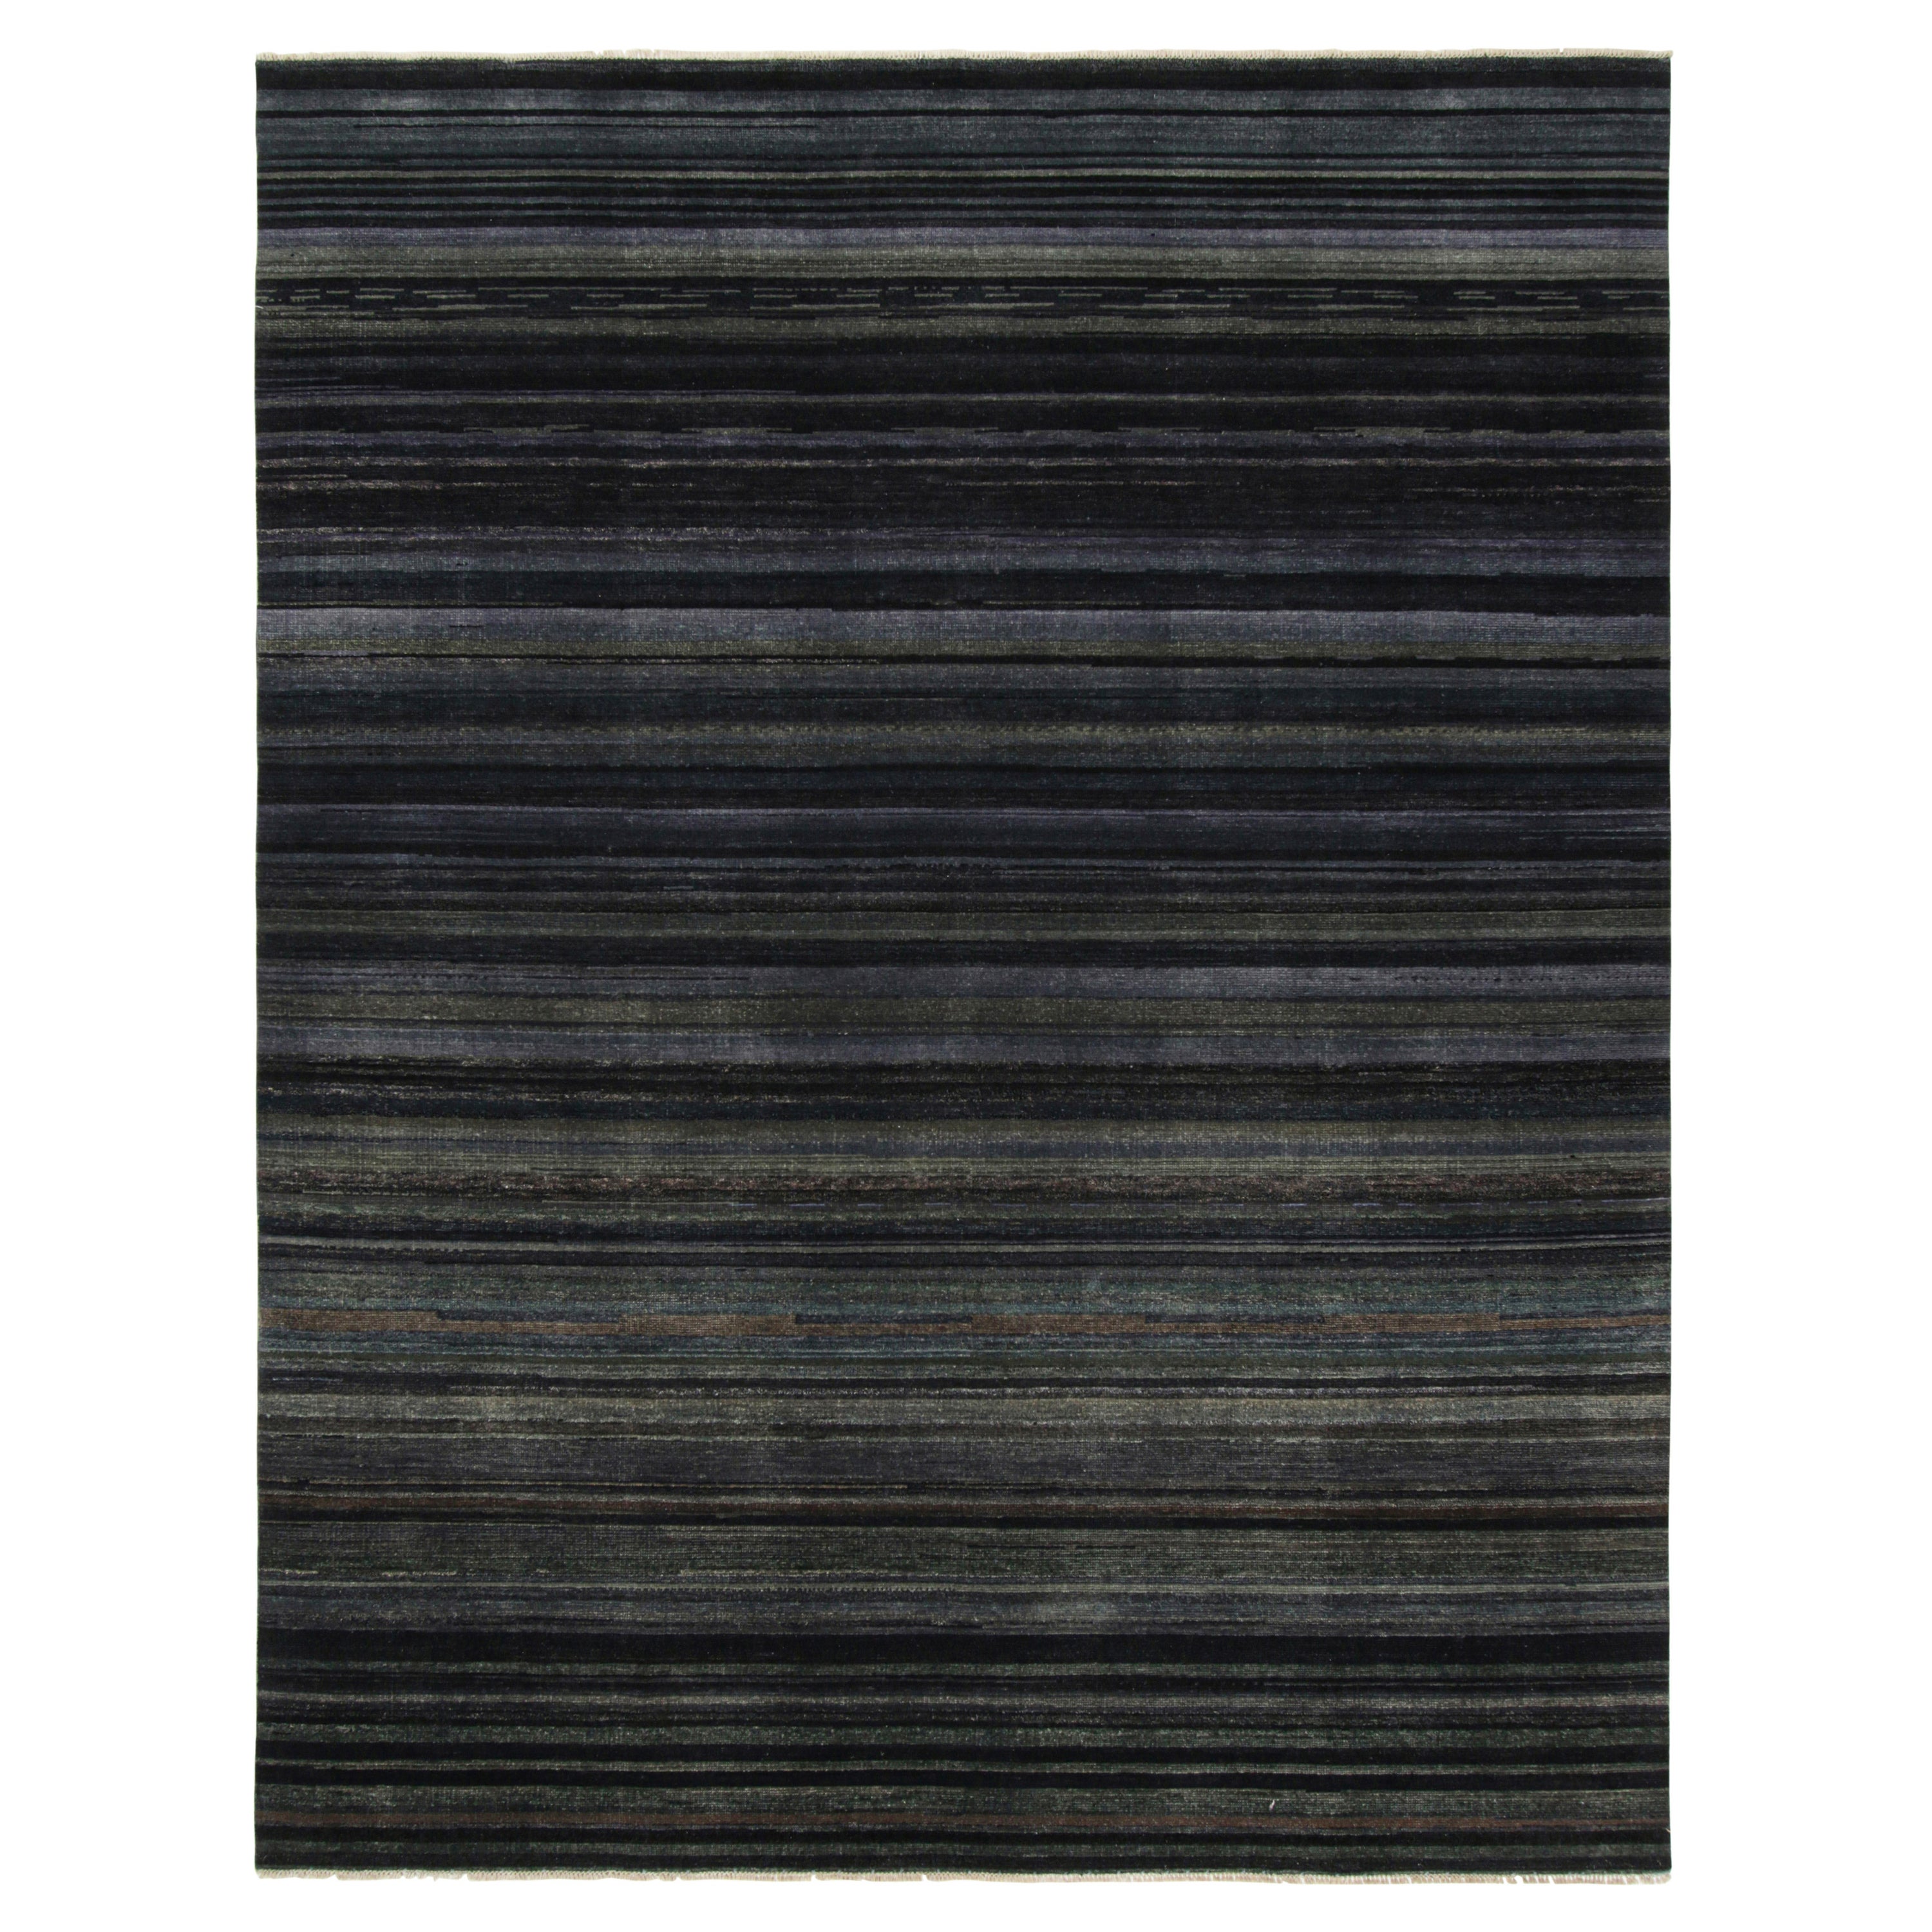 Dieser 8x10 große Strukturteppich ist eine aufregende Neuheit in der Texture of Color Collection von Rug & Kilim. Er ist aus handgeknüpfter Wolle gefertigt und greift das Thema dieser Kollektion neu auf - insbesondere durch eine pflanzliche Färbung,